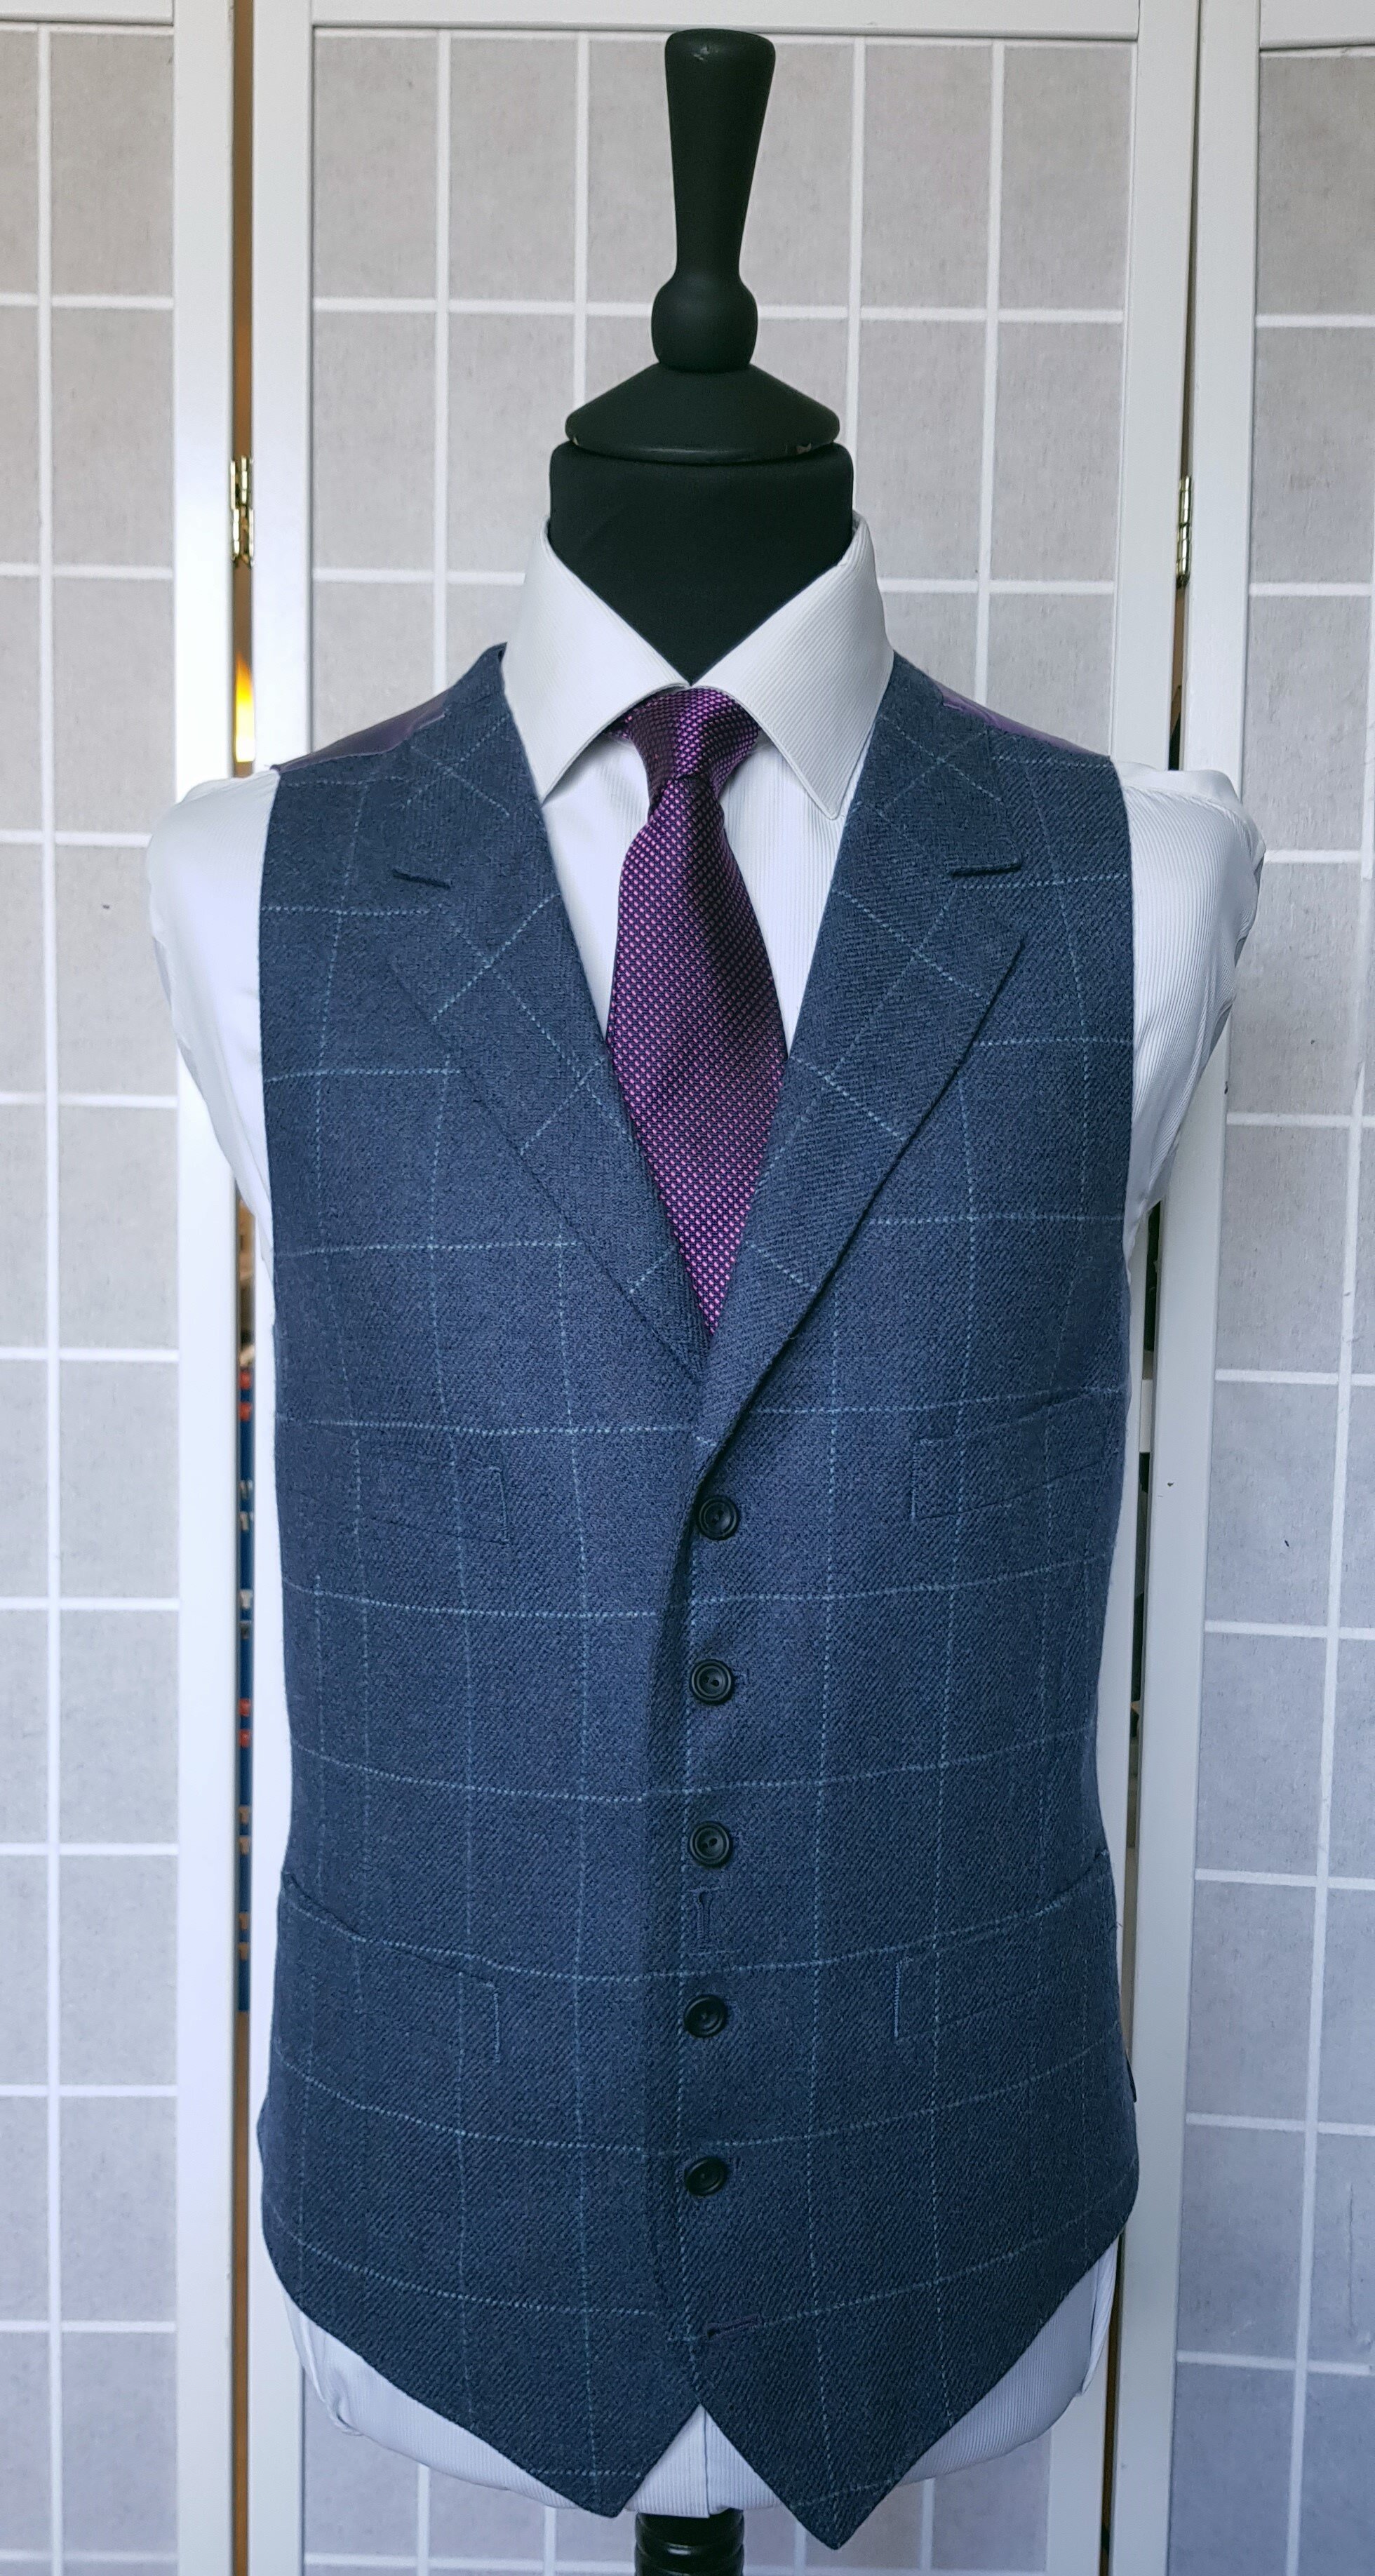 3 Piece suit in Blue Check Tweed (3).jpg